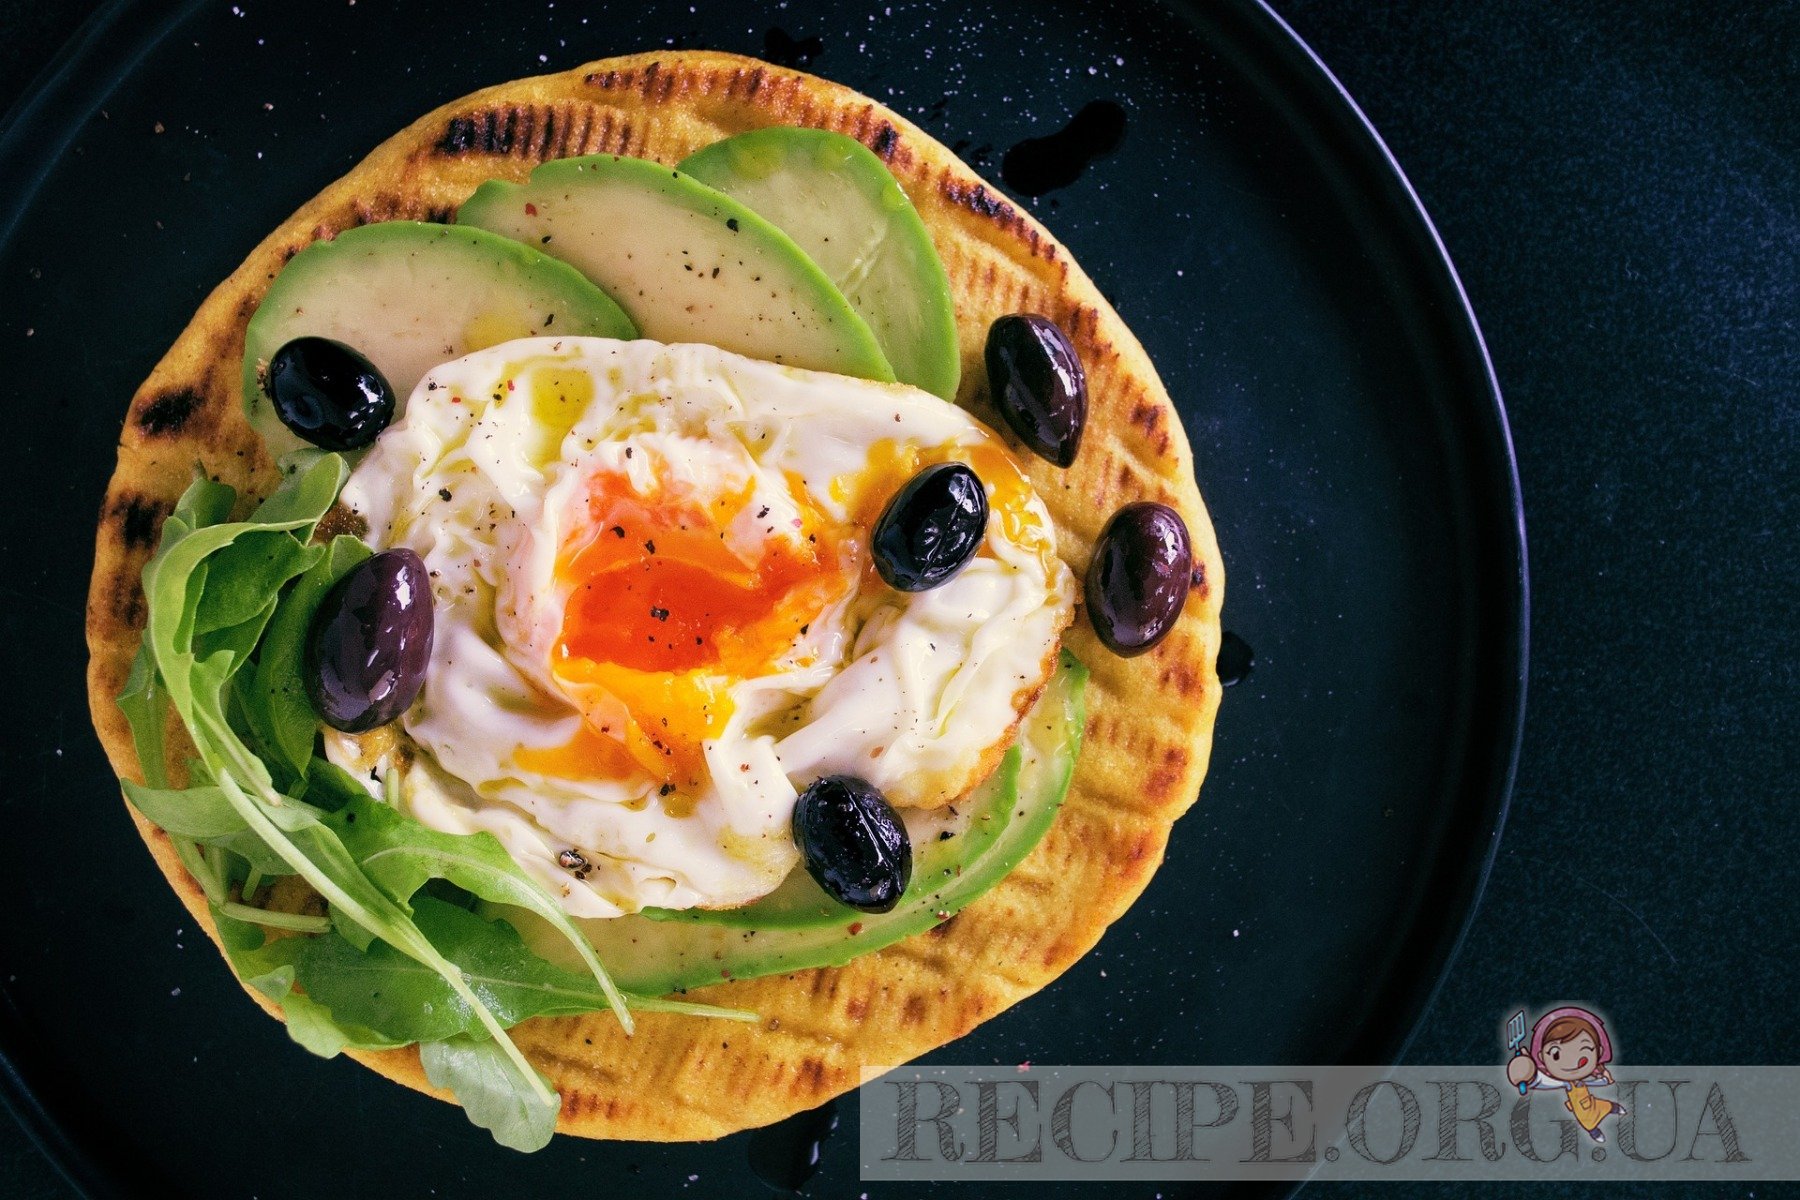 Рецепт Завтрак на тосте с нарезанным авокадо, жареным яйцом и зеленью с фото